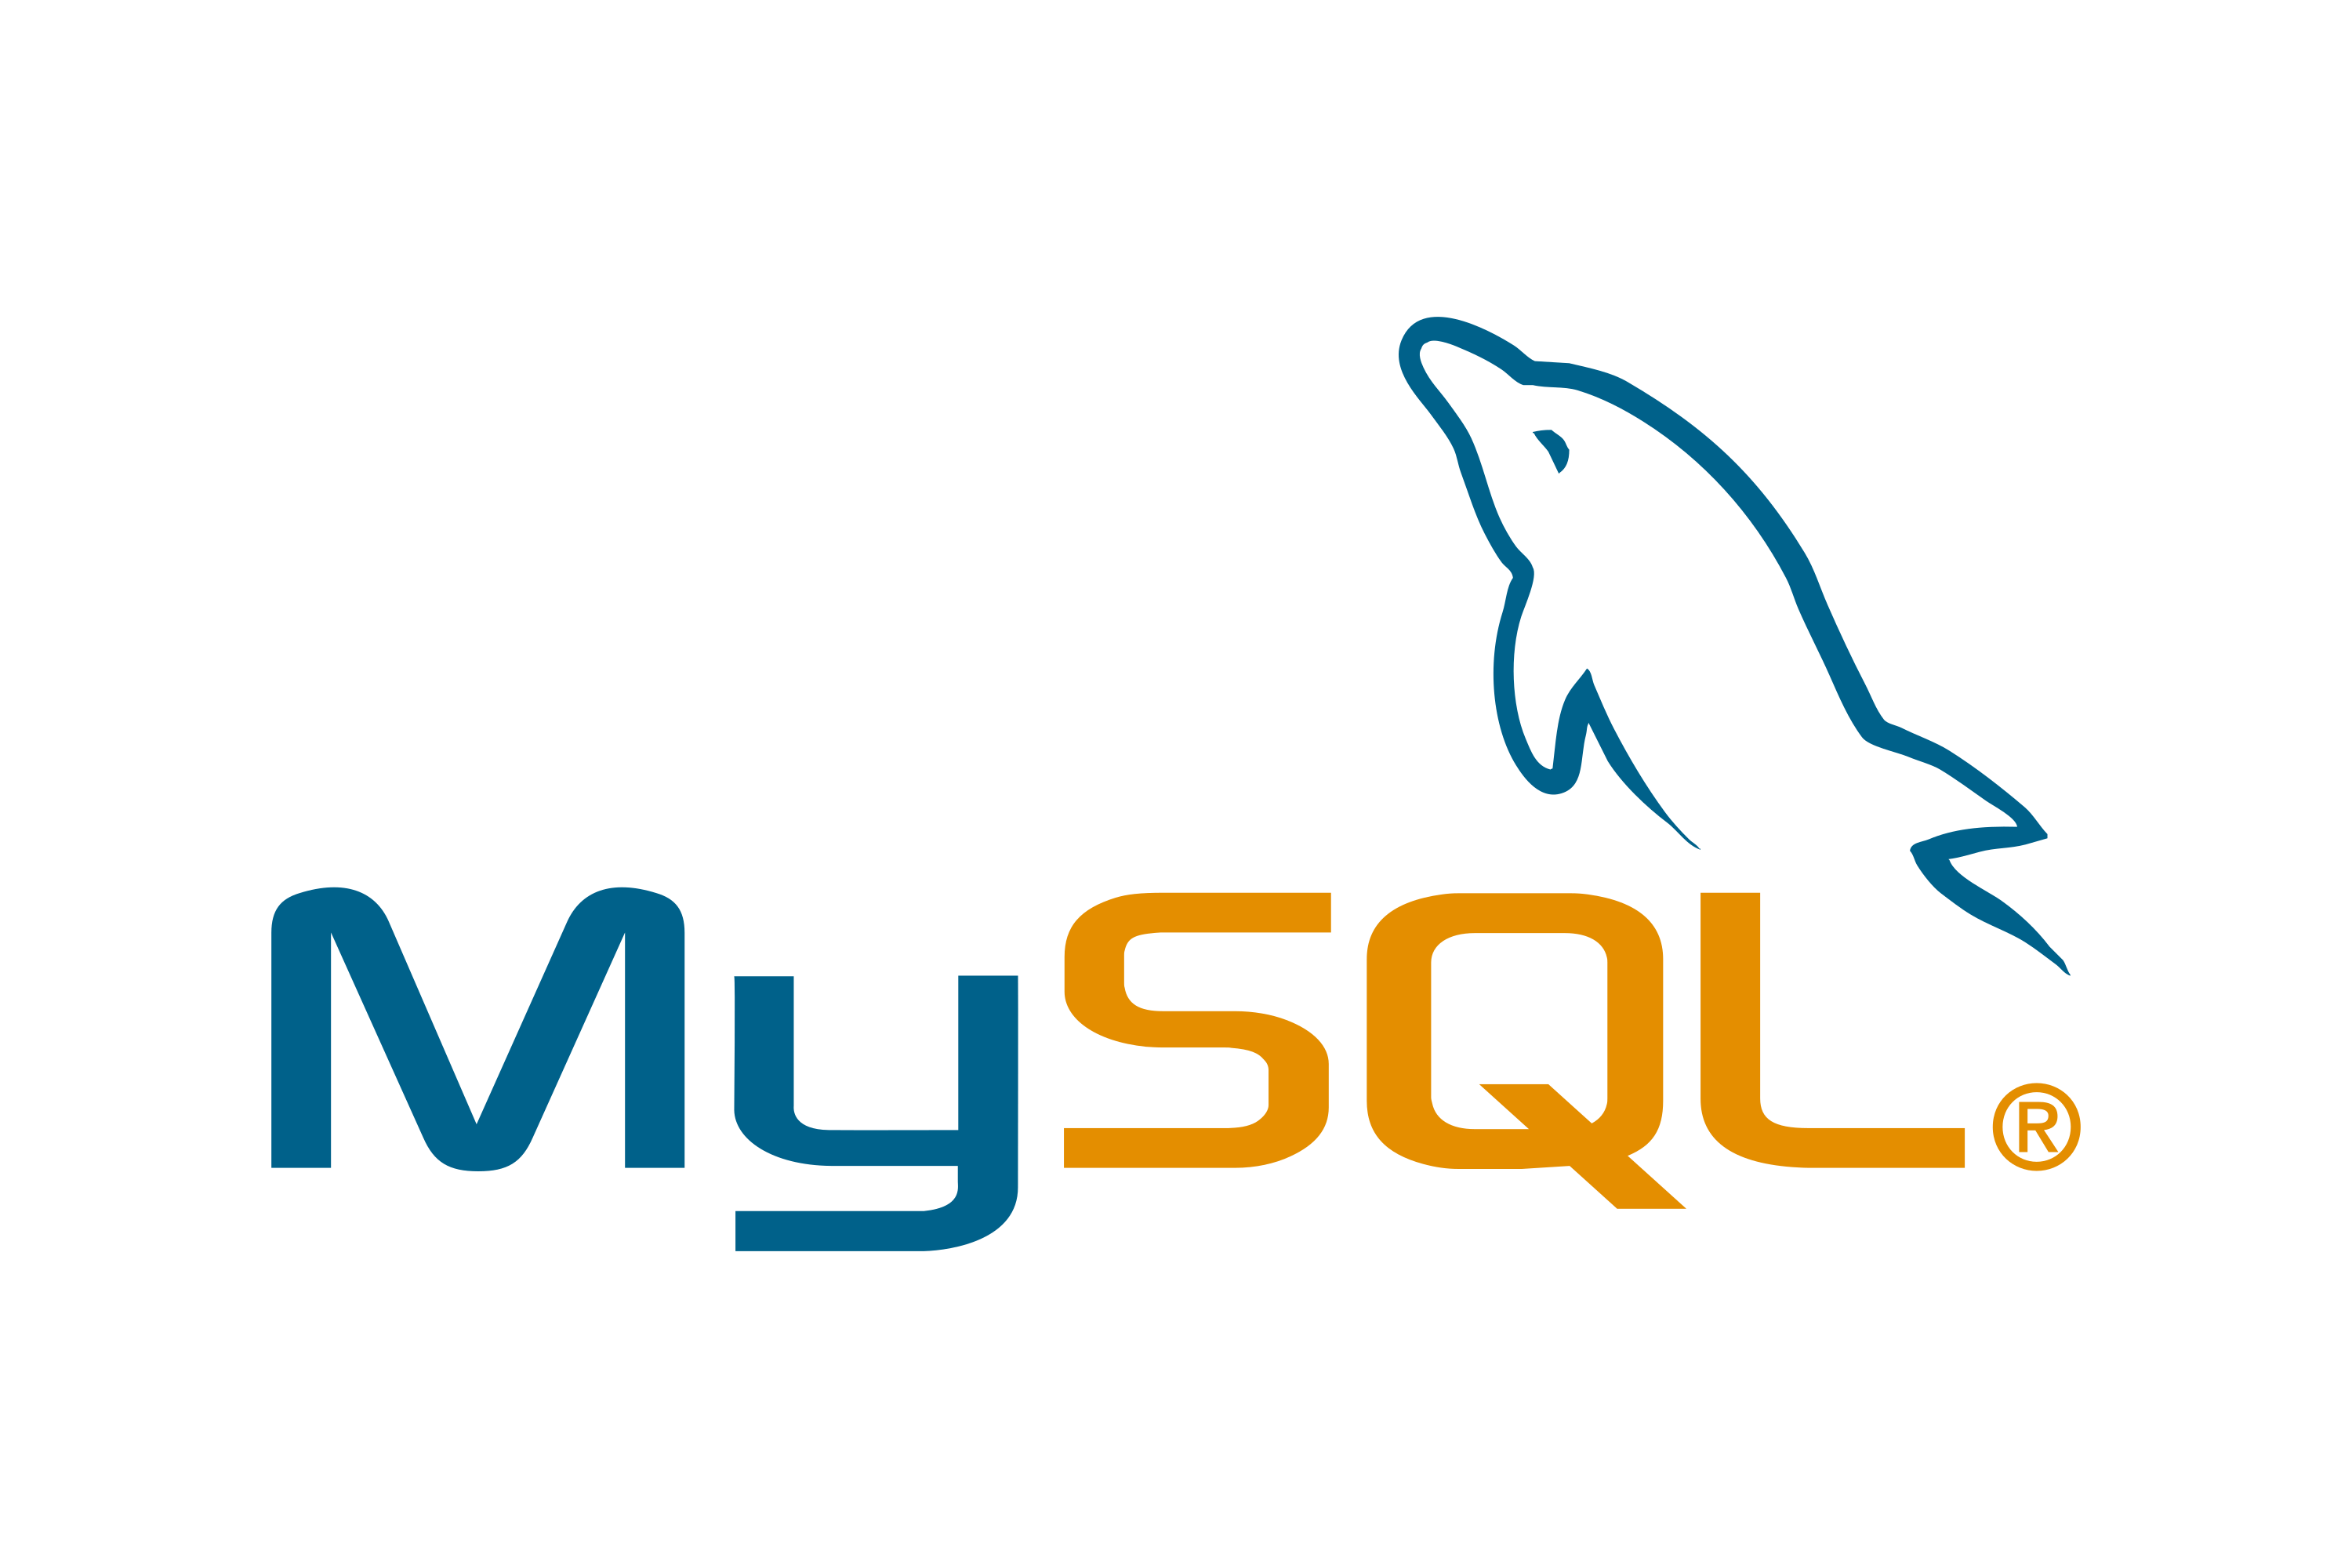 Download MySQL Logo in SVG Vector or PNG File Format - Logo.wine